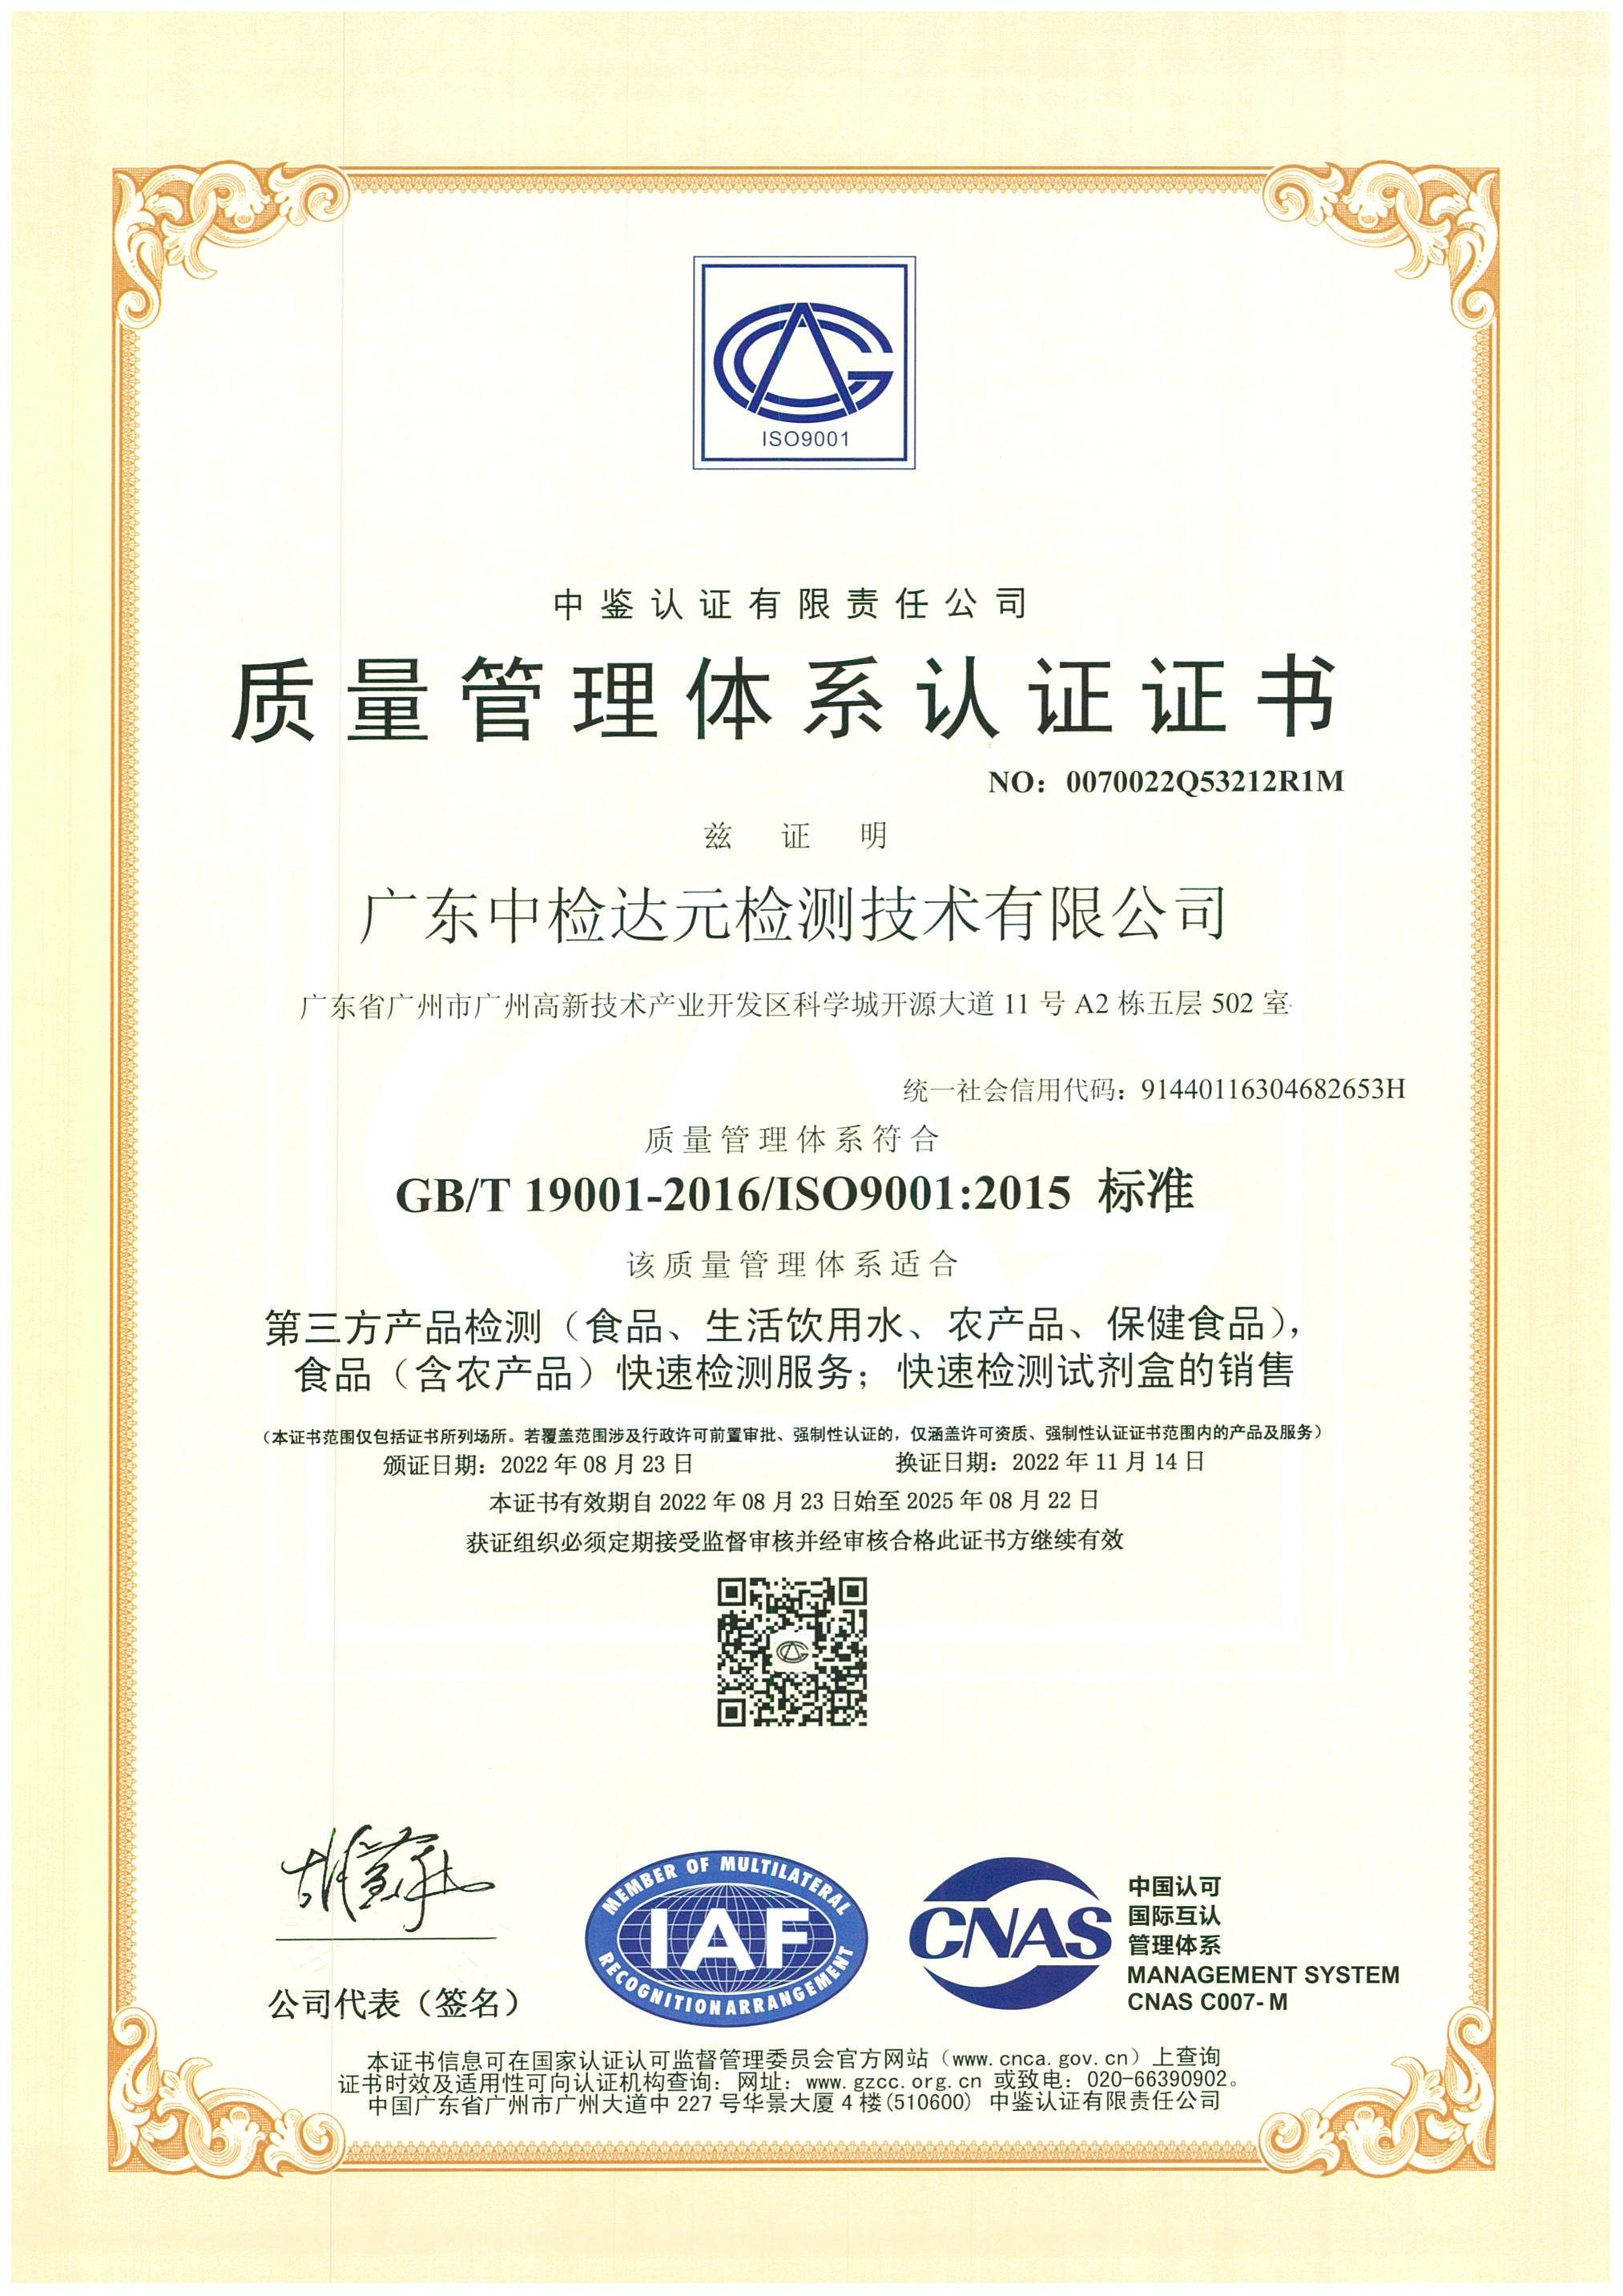 ZJDY-ZZ-012 質量管理體系認證證書